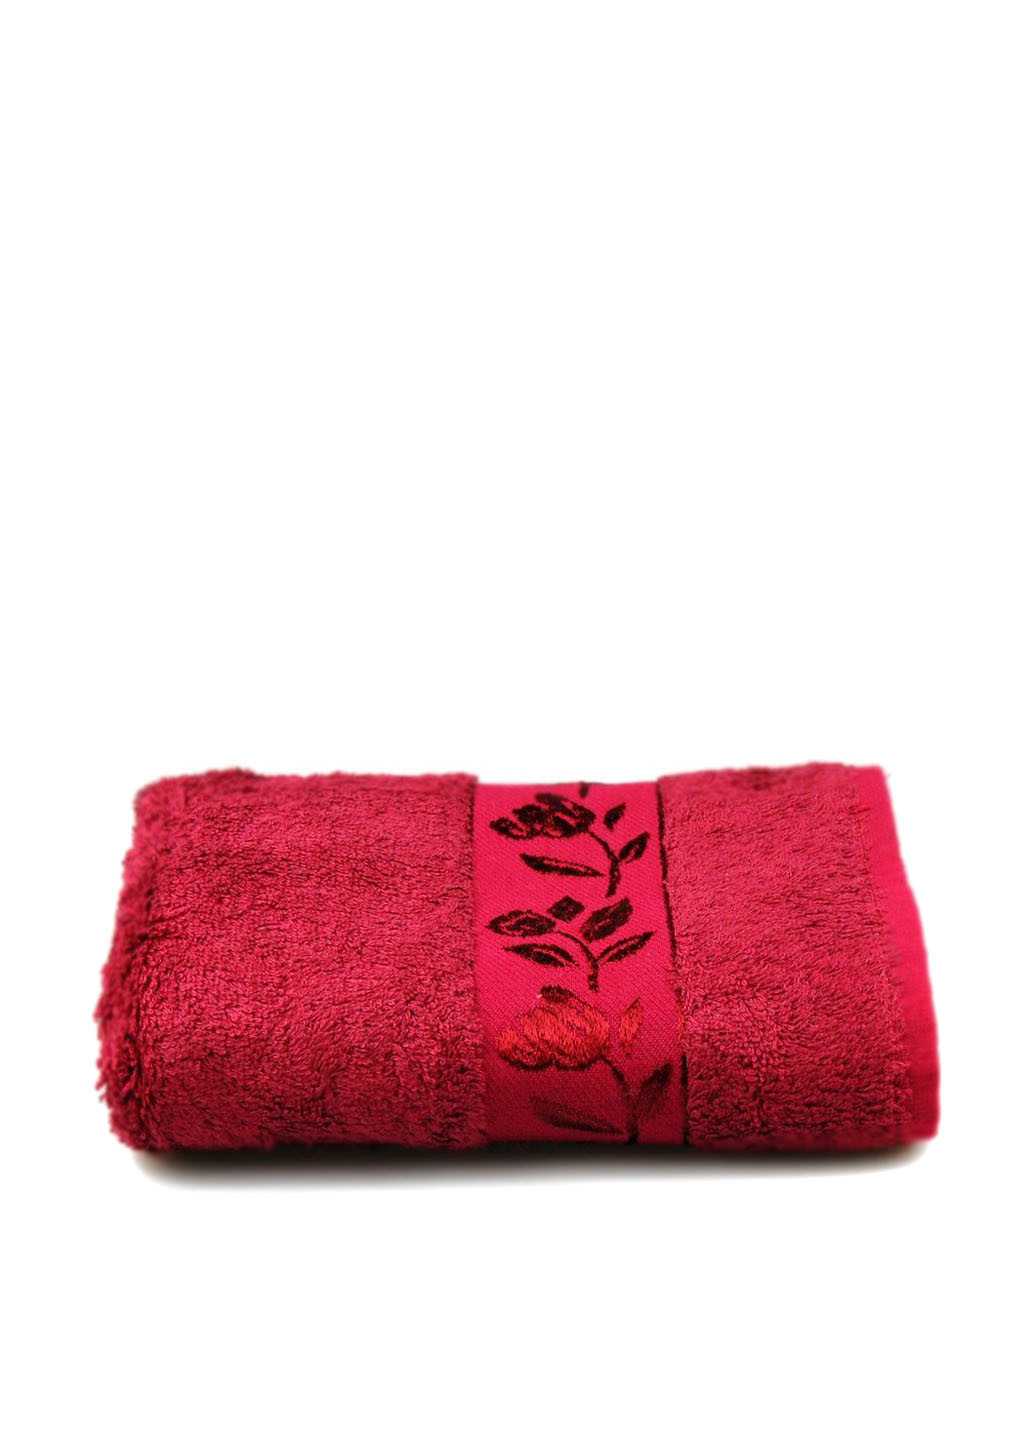 Home Line полотенце, 50х90 см цветочный темно-красный производство - Турция